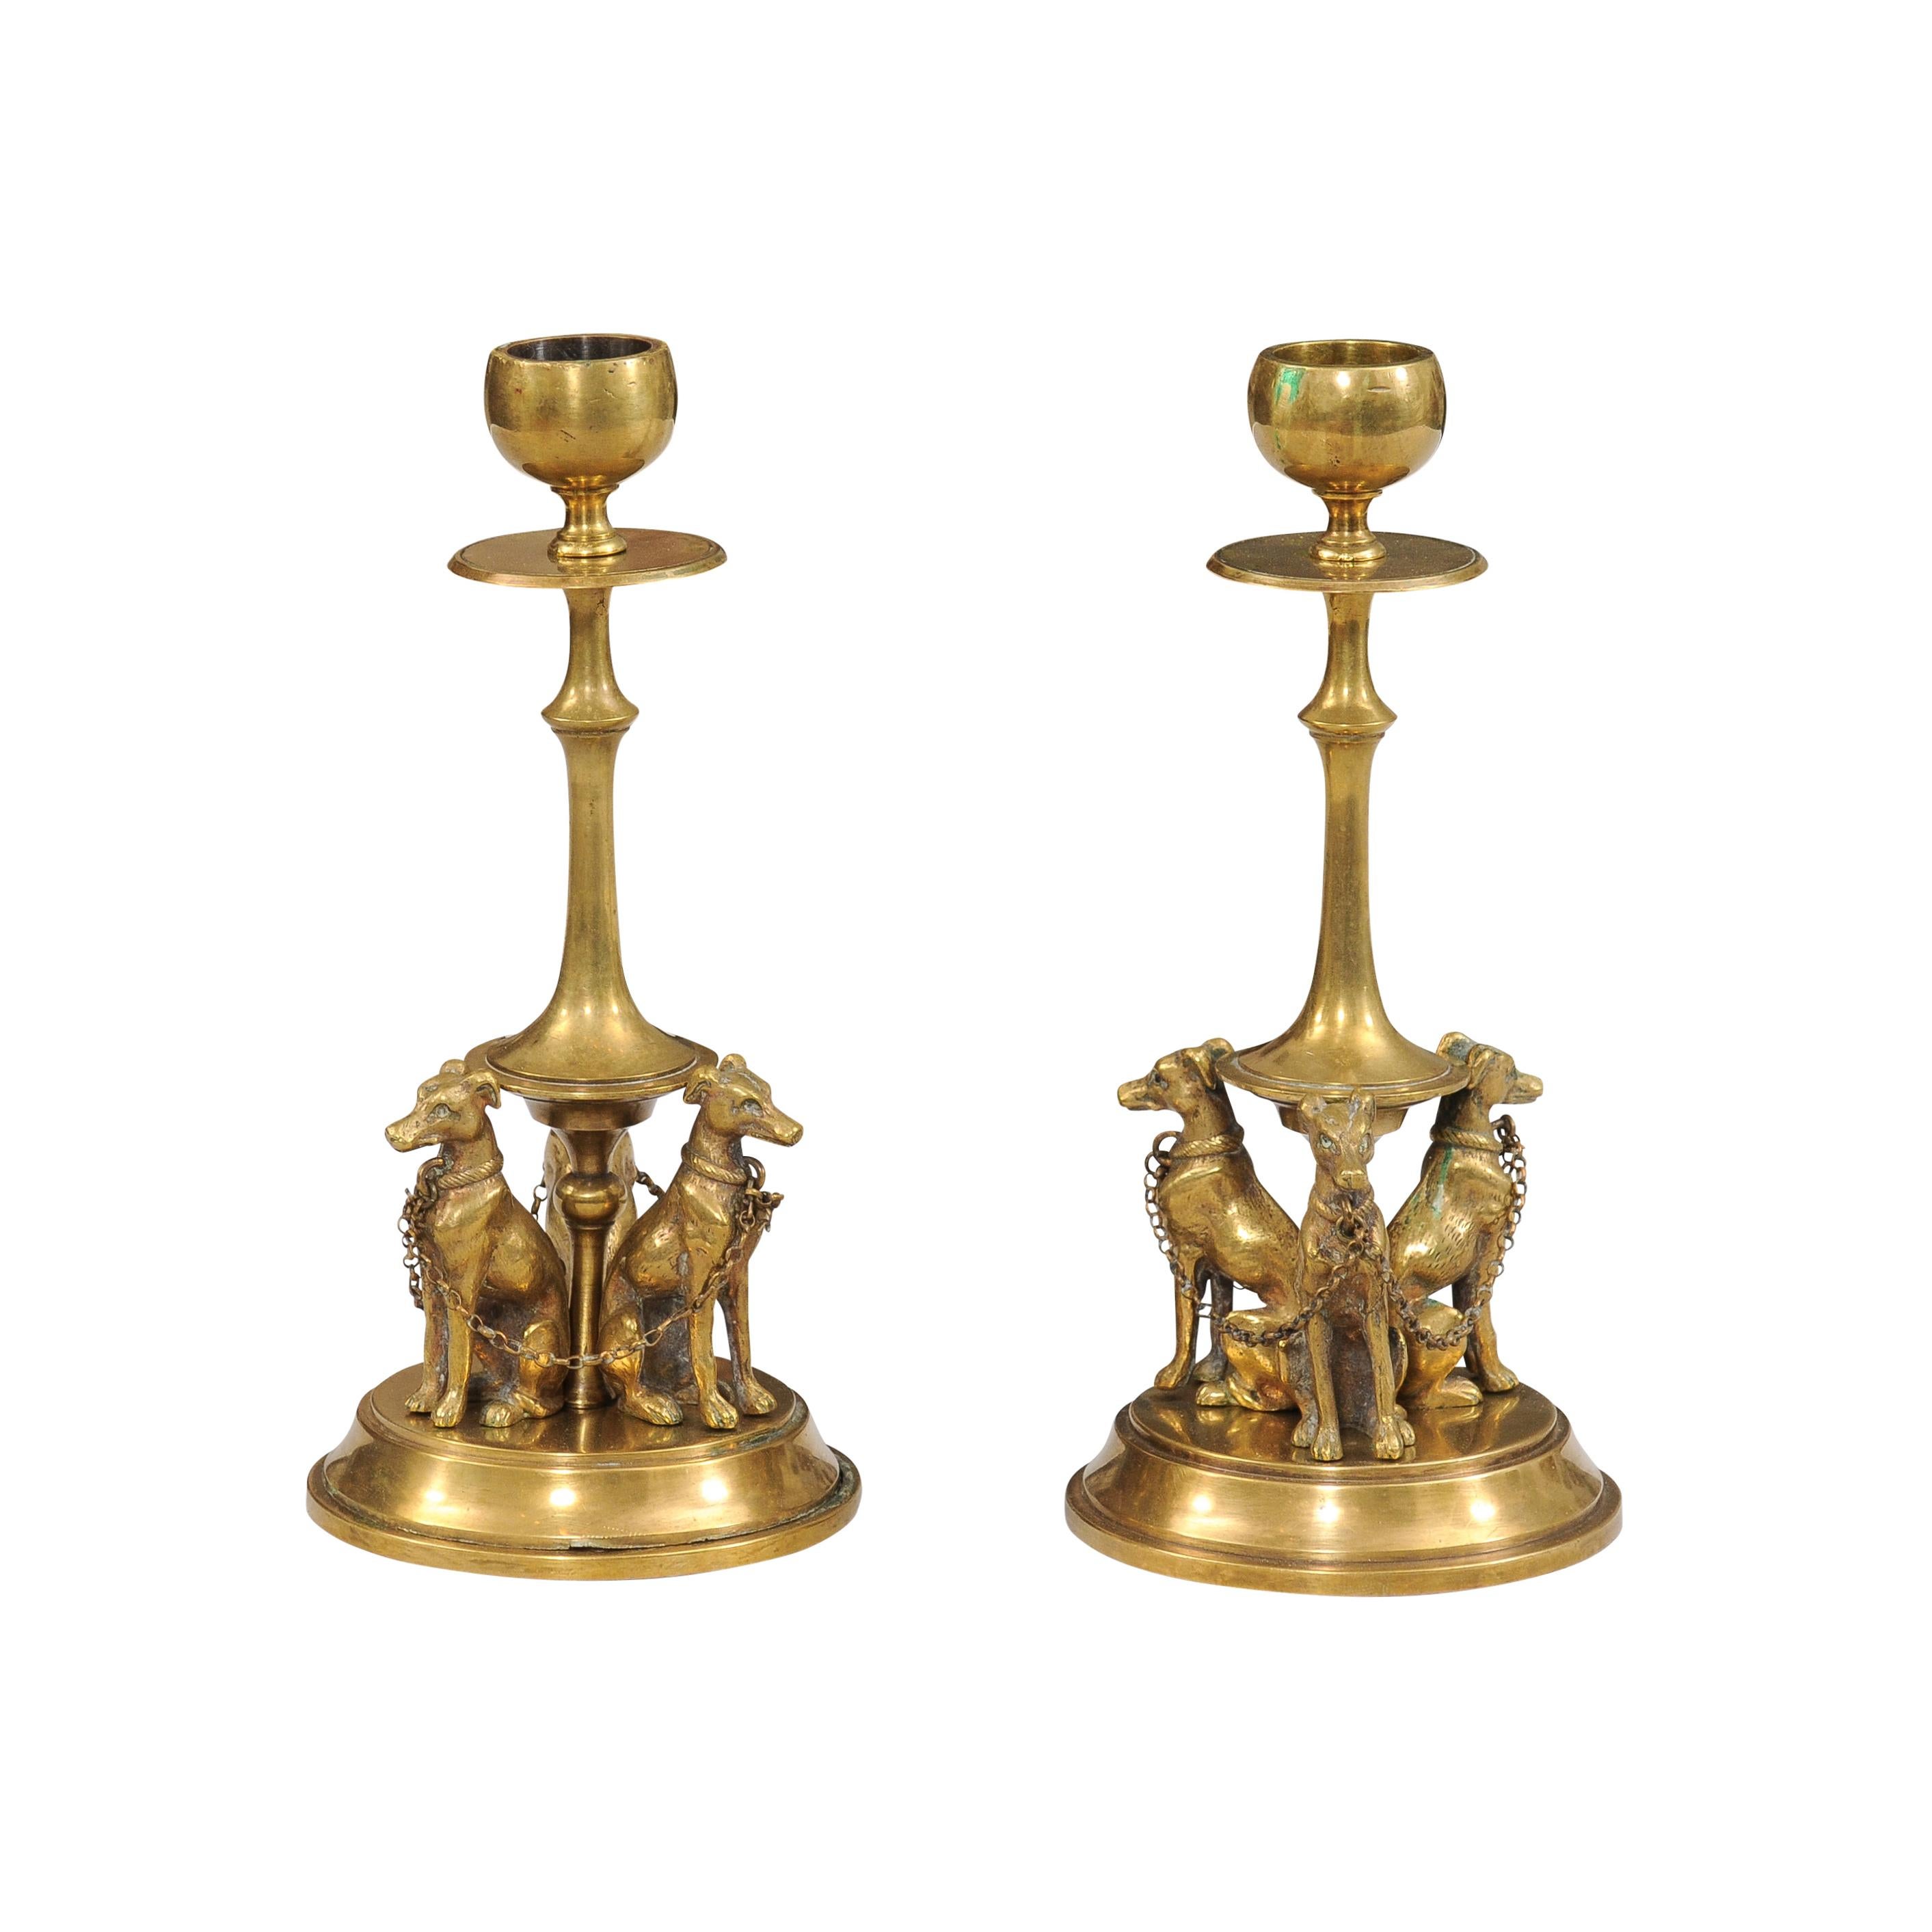 Paire de chandeliers français en bronze du XIXe siècle représentant chacun trois lévriers dans la partie inférieure, reliés l'un à l'autre par des maillons de chaîne ajustés à leur collier. Cette paire de chandeliers en bronze français du XIXe